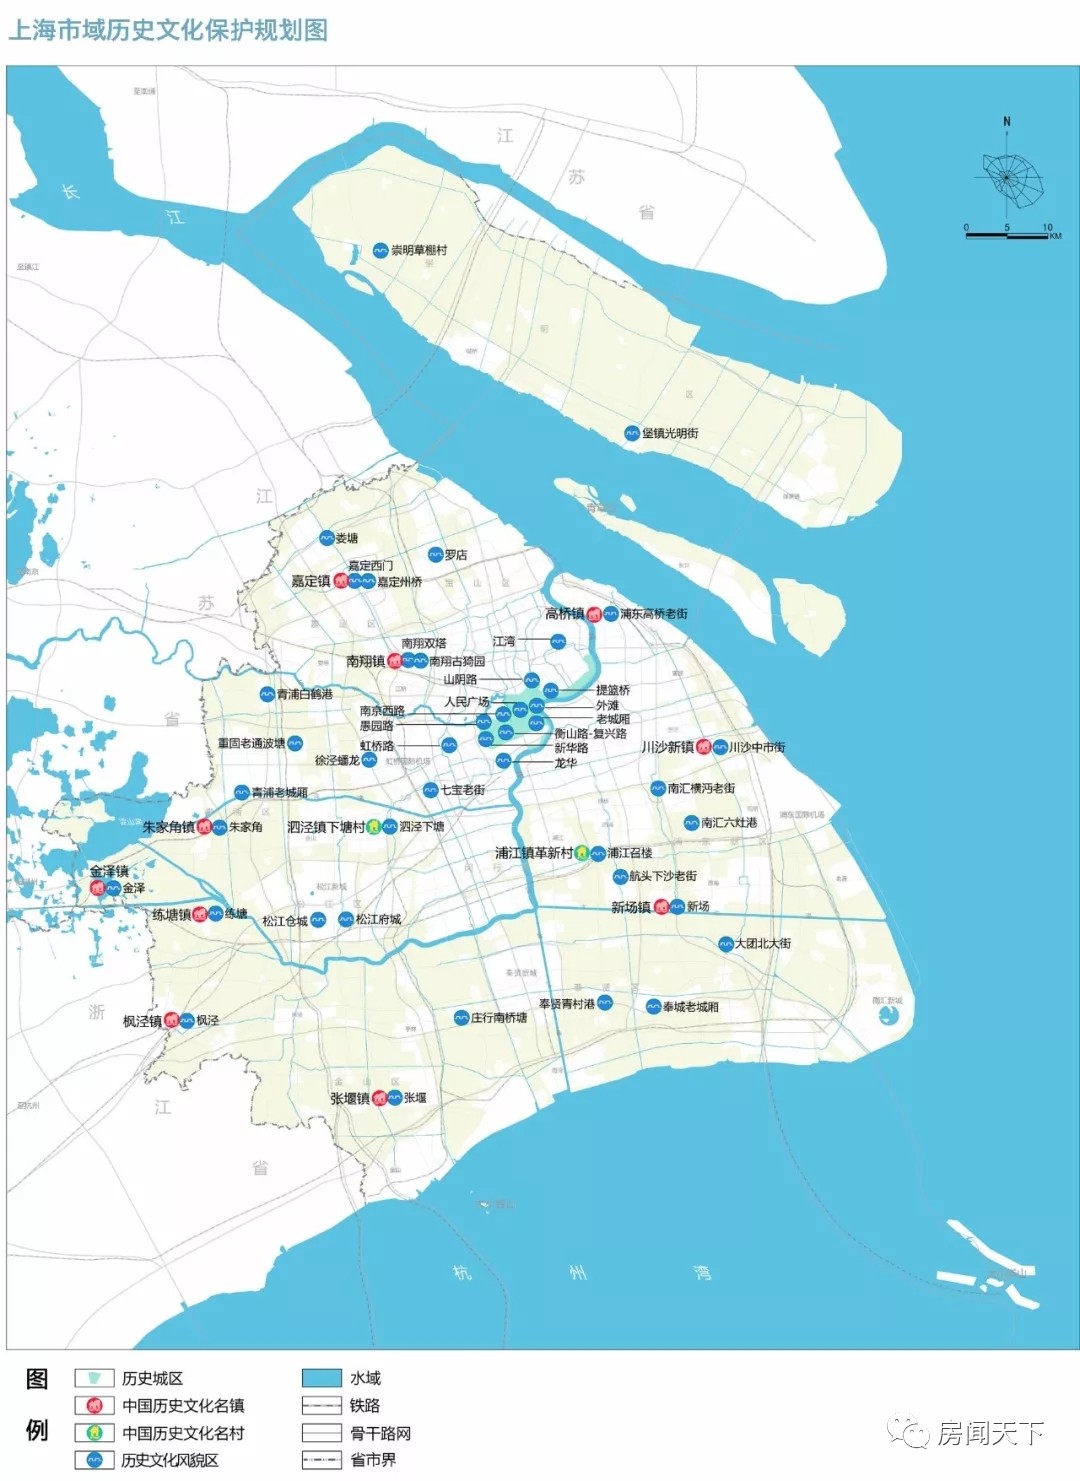 上海地铁2050规划展示图片